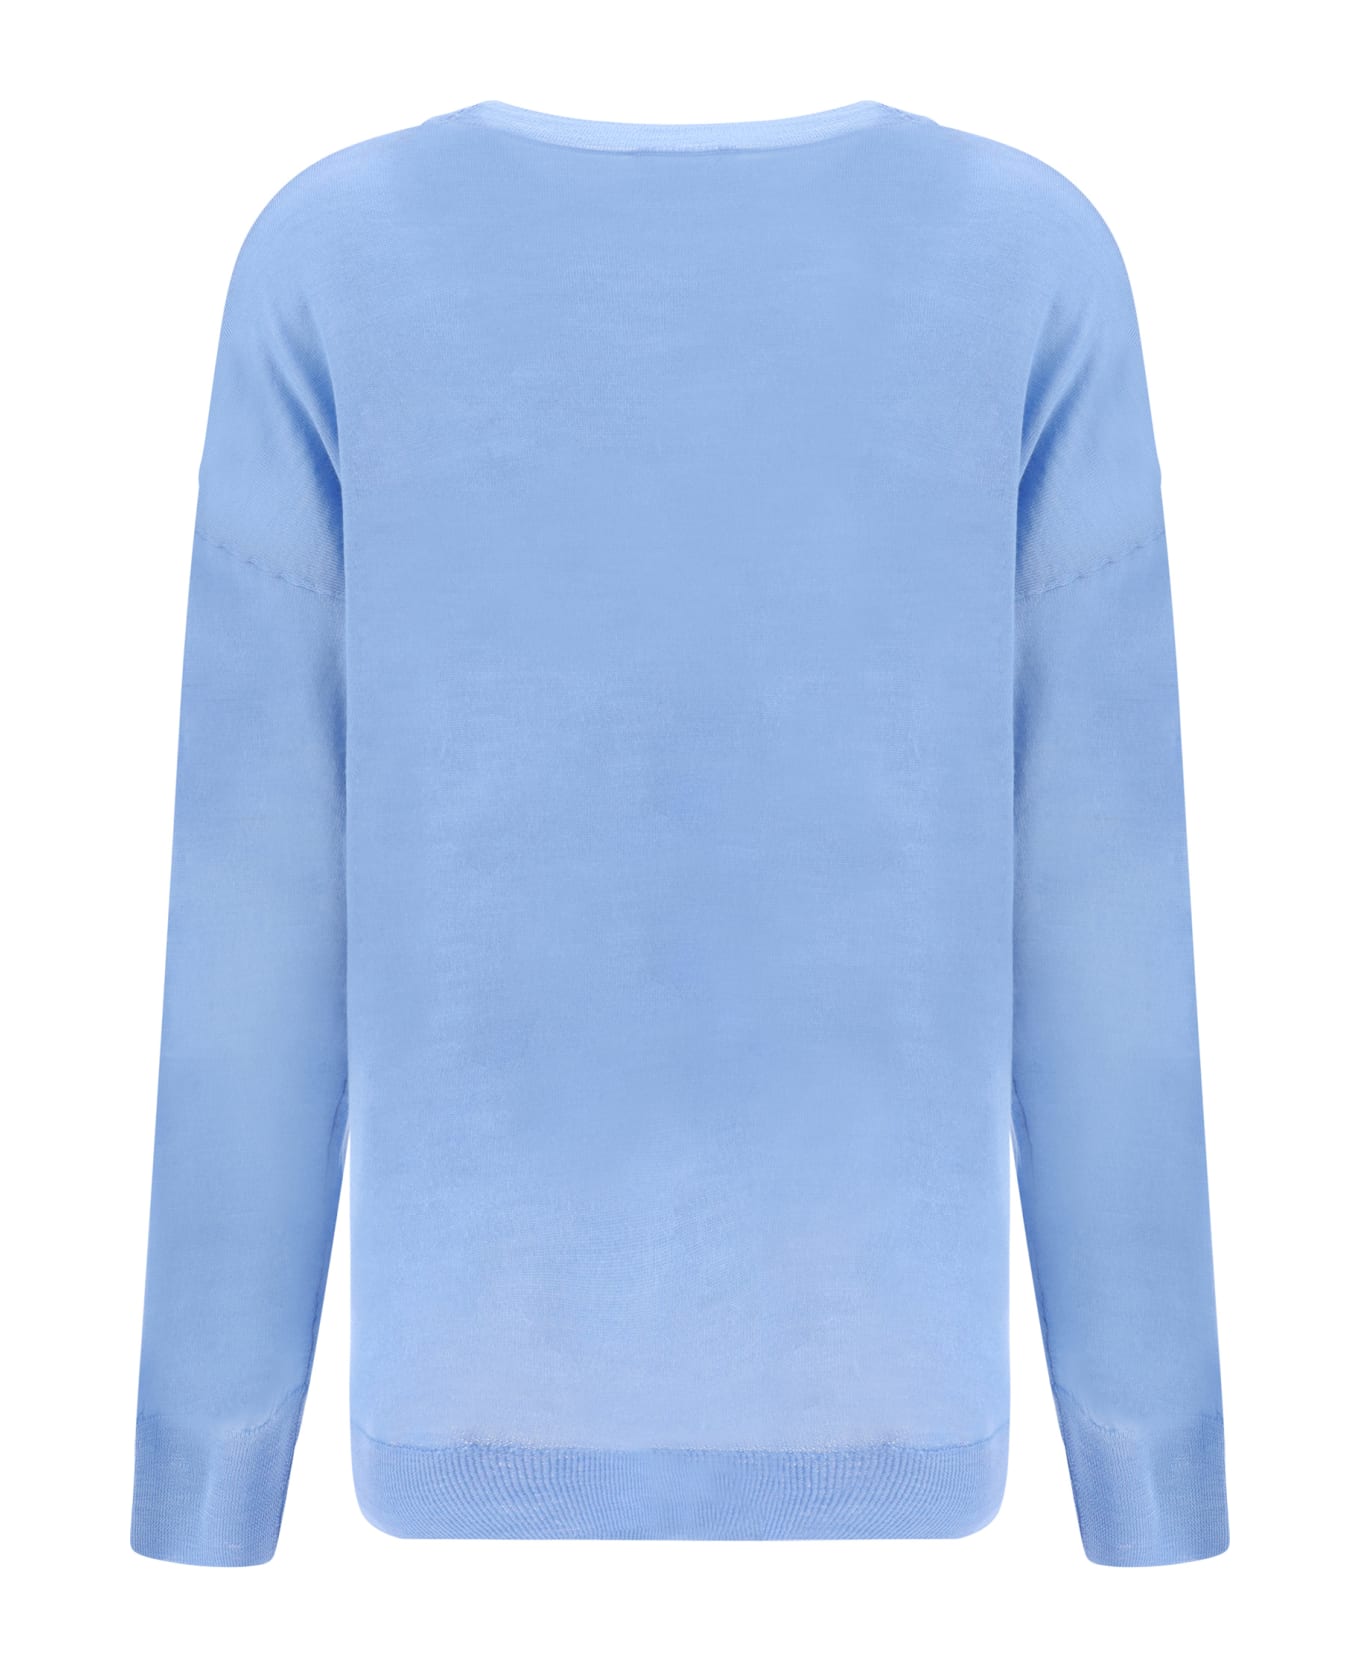 Parosh Linfa Sweater - Azzurro Polvere ニットウェア